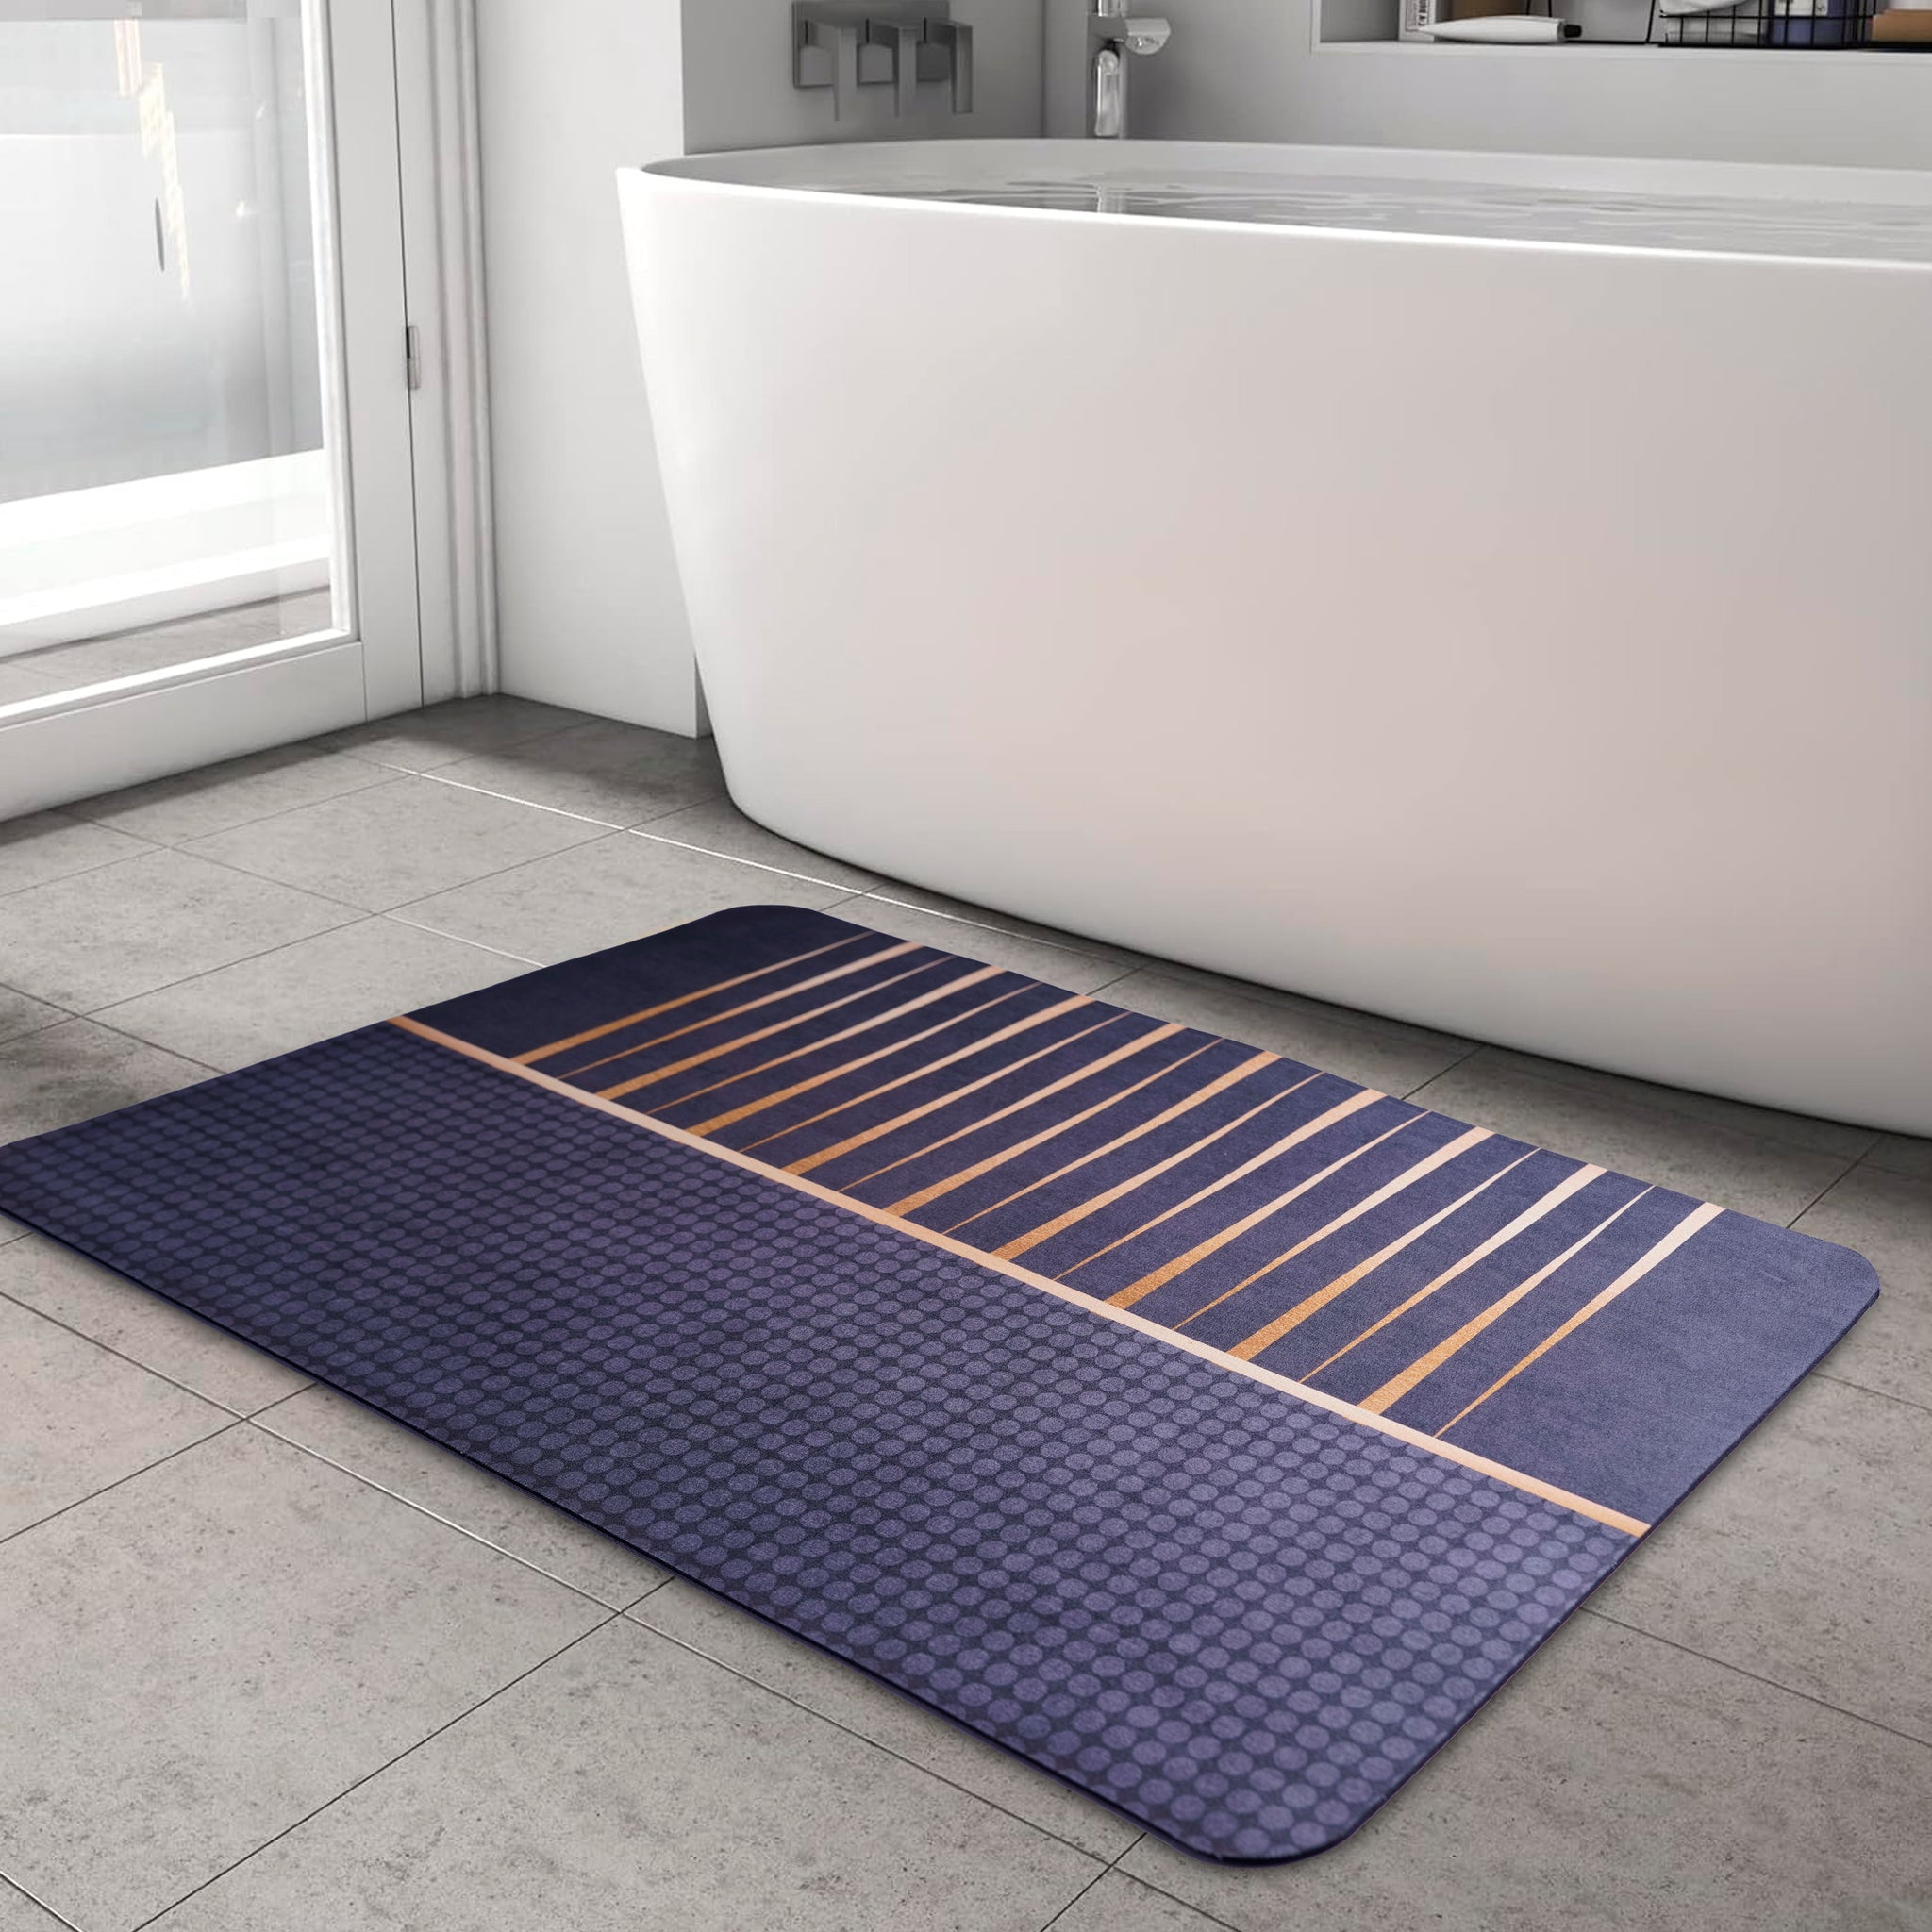 Anti-Slip Quick Drying Bath Mat, Black & Gold, Absorbent PVC (24”X16”)